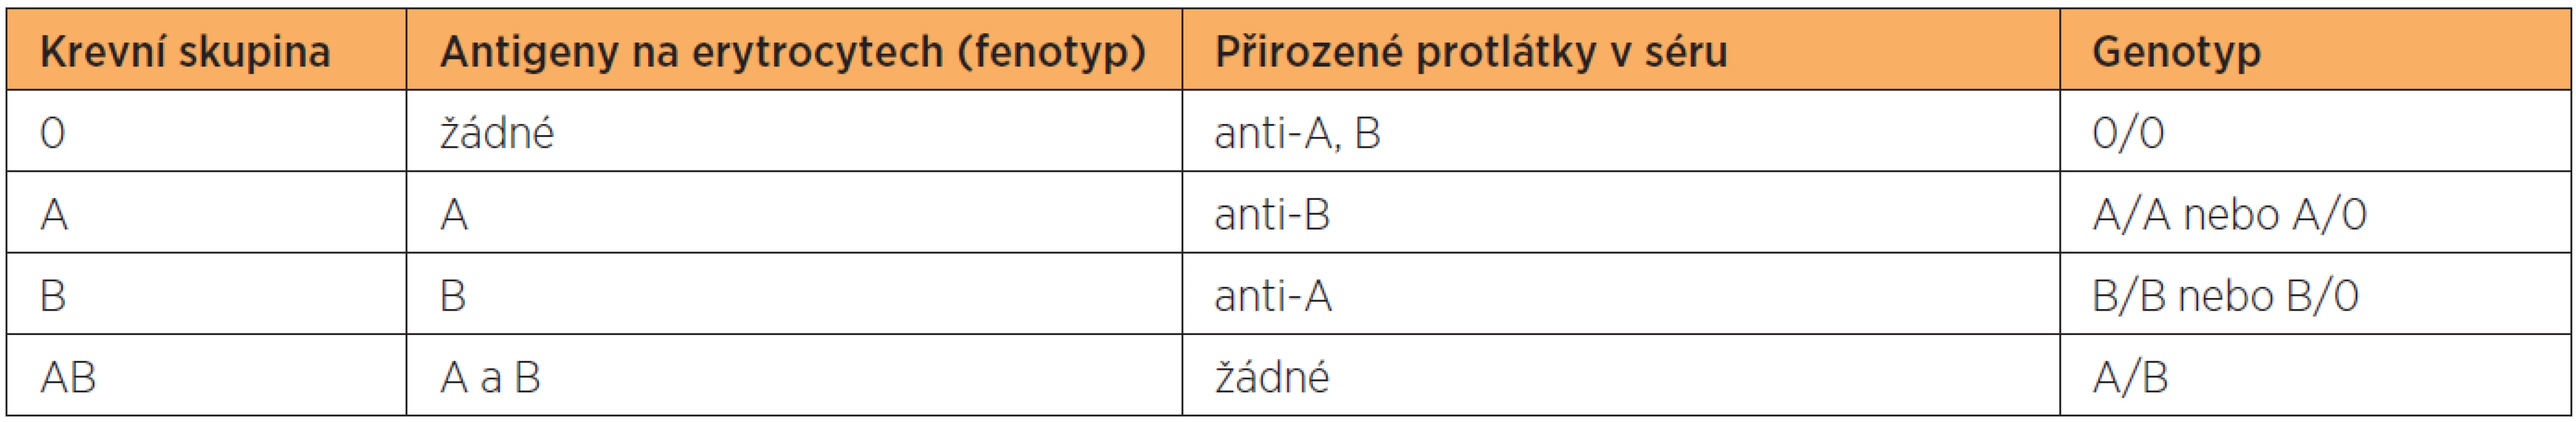 Přehled jednotlivých krevních skupin včetně antigenů (fenotypů), přirozených protilátek a odpovídajících genotypů